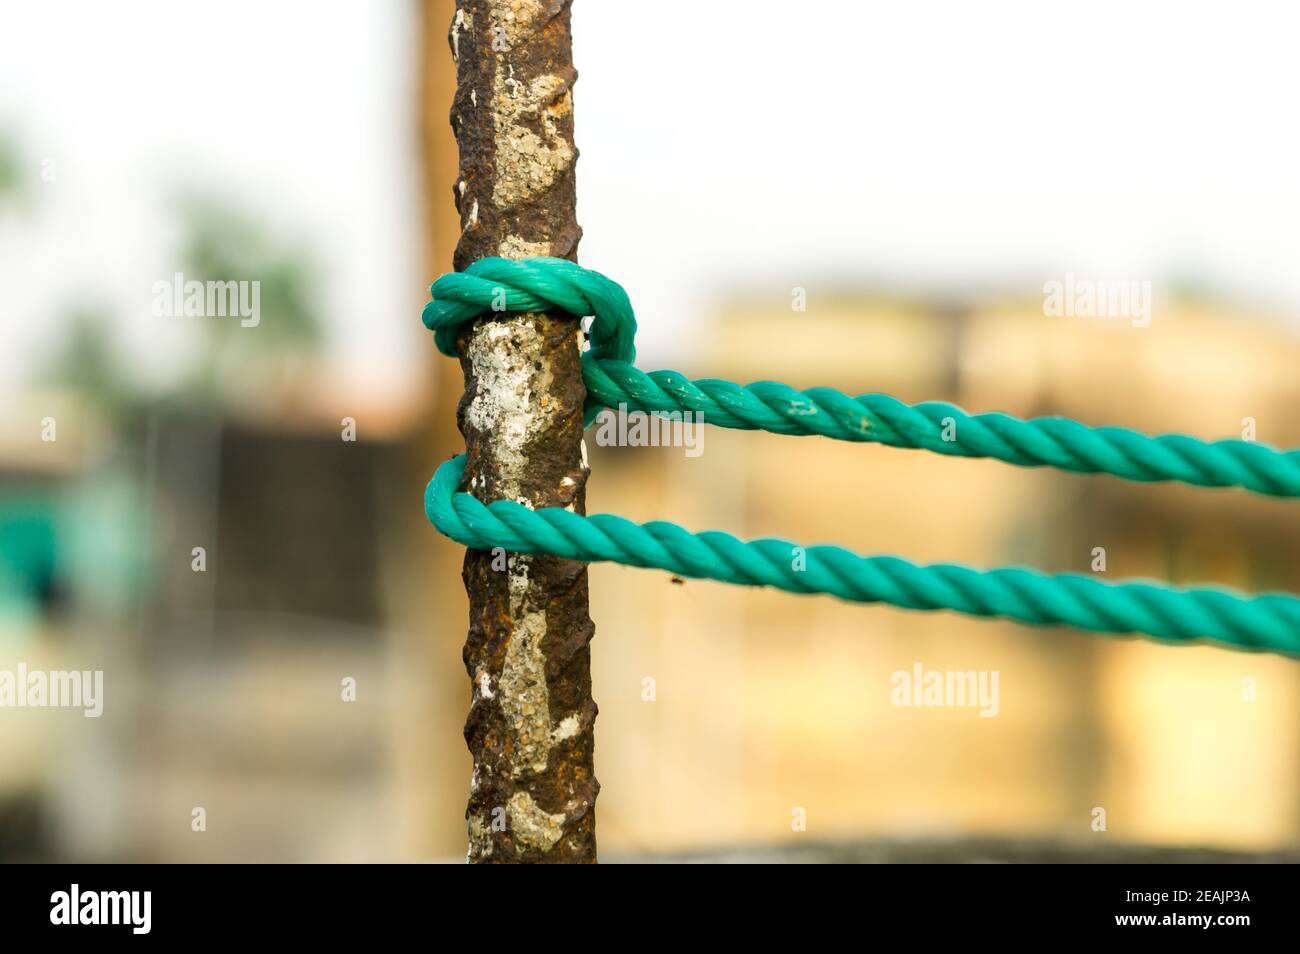 Une corde est attachée dans un nœud autour d'un poteau de clôture, corde attachée nœuds d'attelage sur un poteau de fer rouillé isolé de l'arrière-plan. Banque D'Images